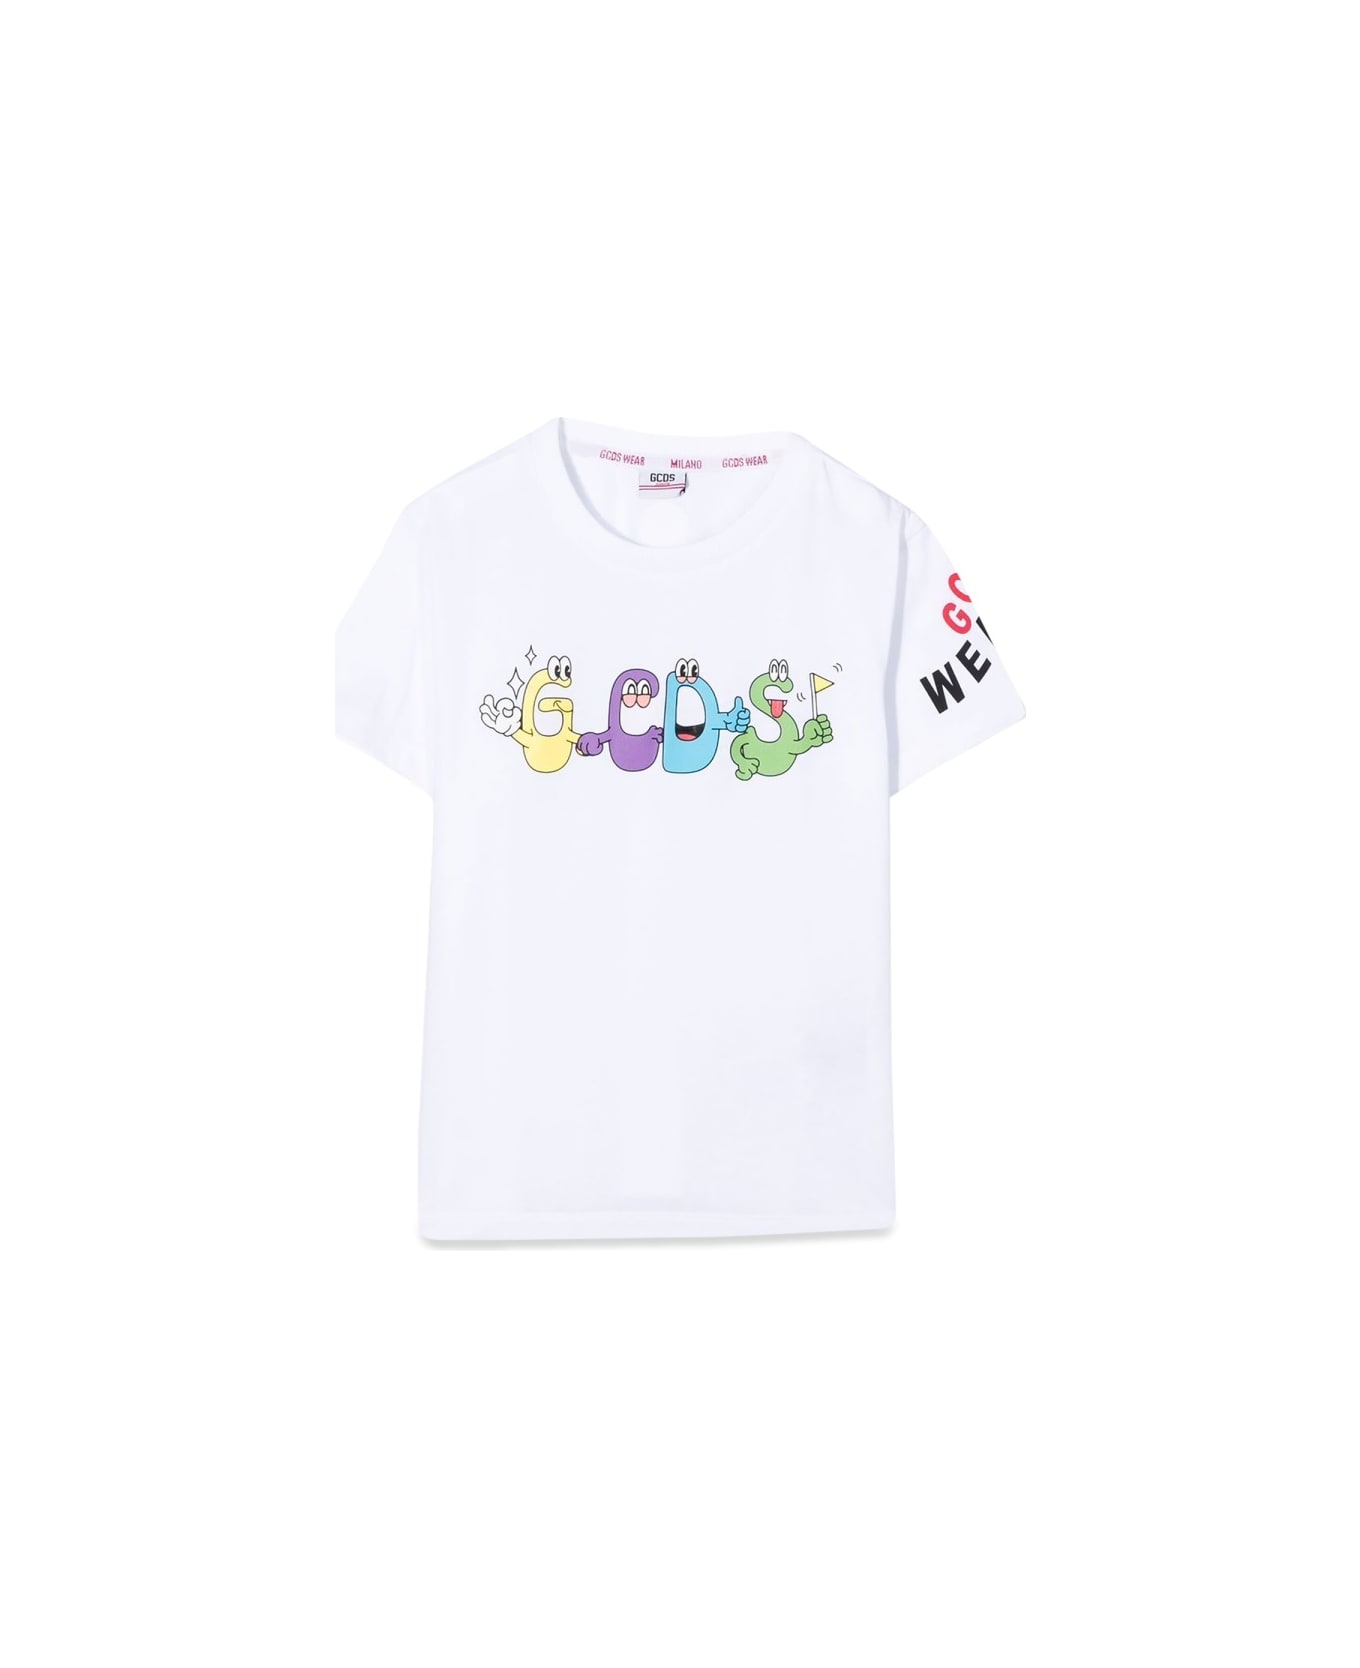 GCDS Mini T-shirt - WHITE